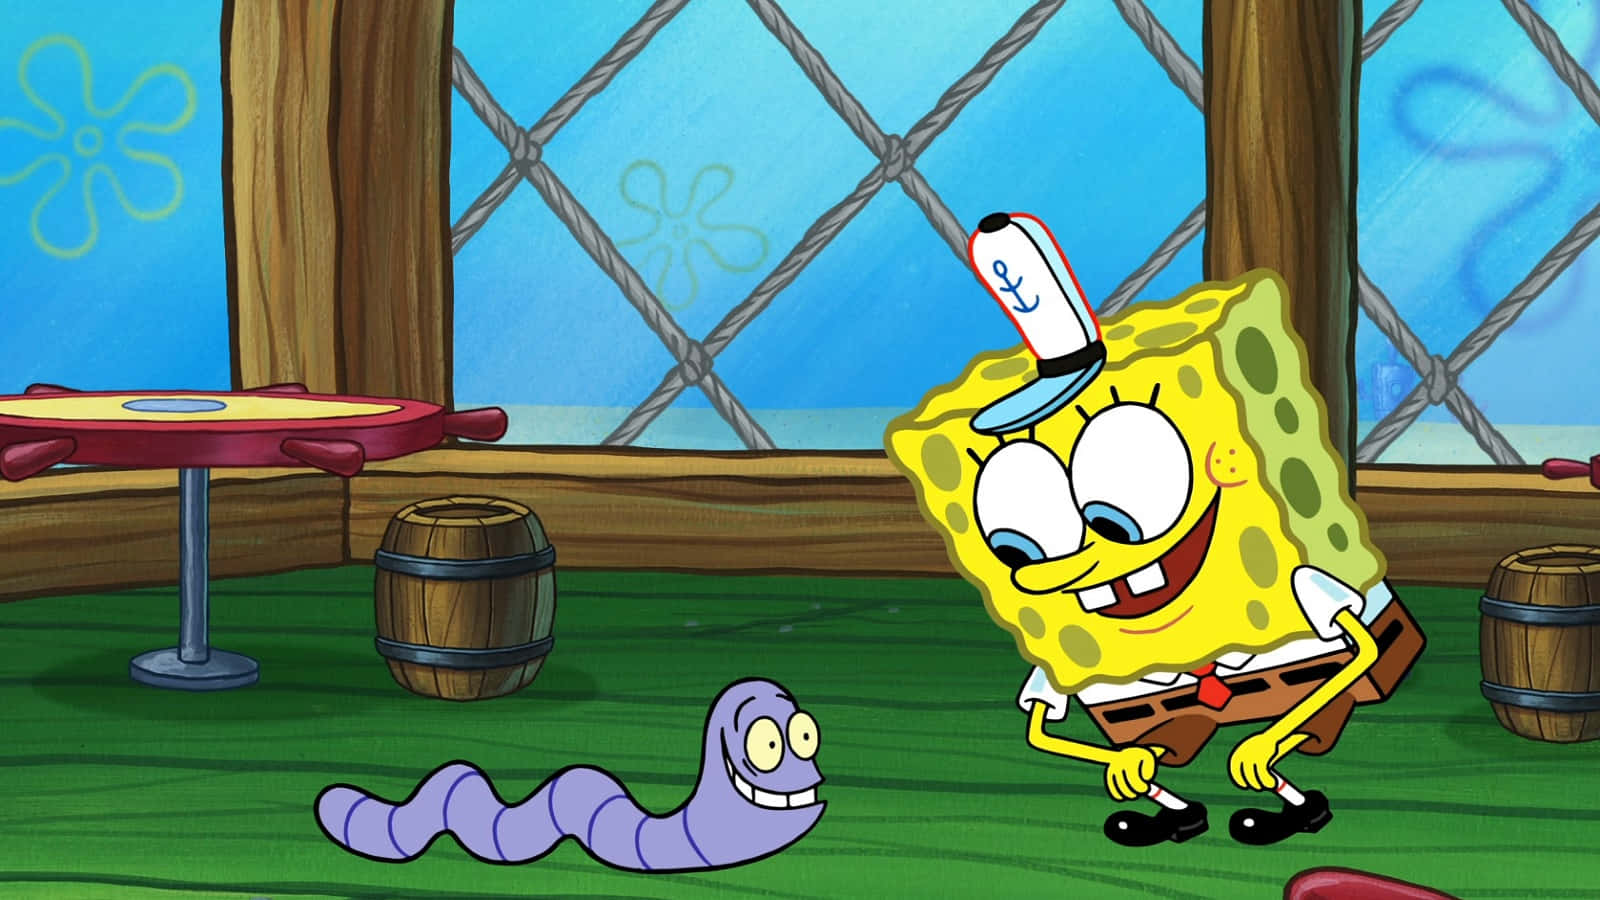 SpongeBob SquarePants With A Pet Worm Picture